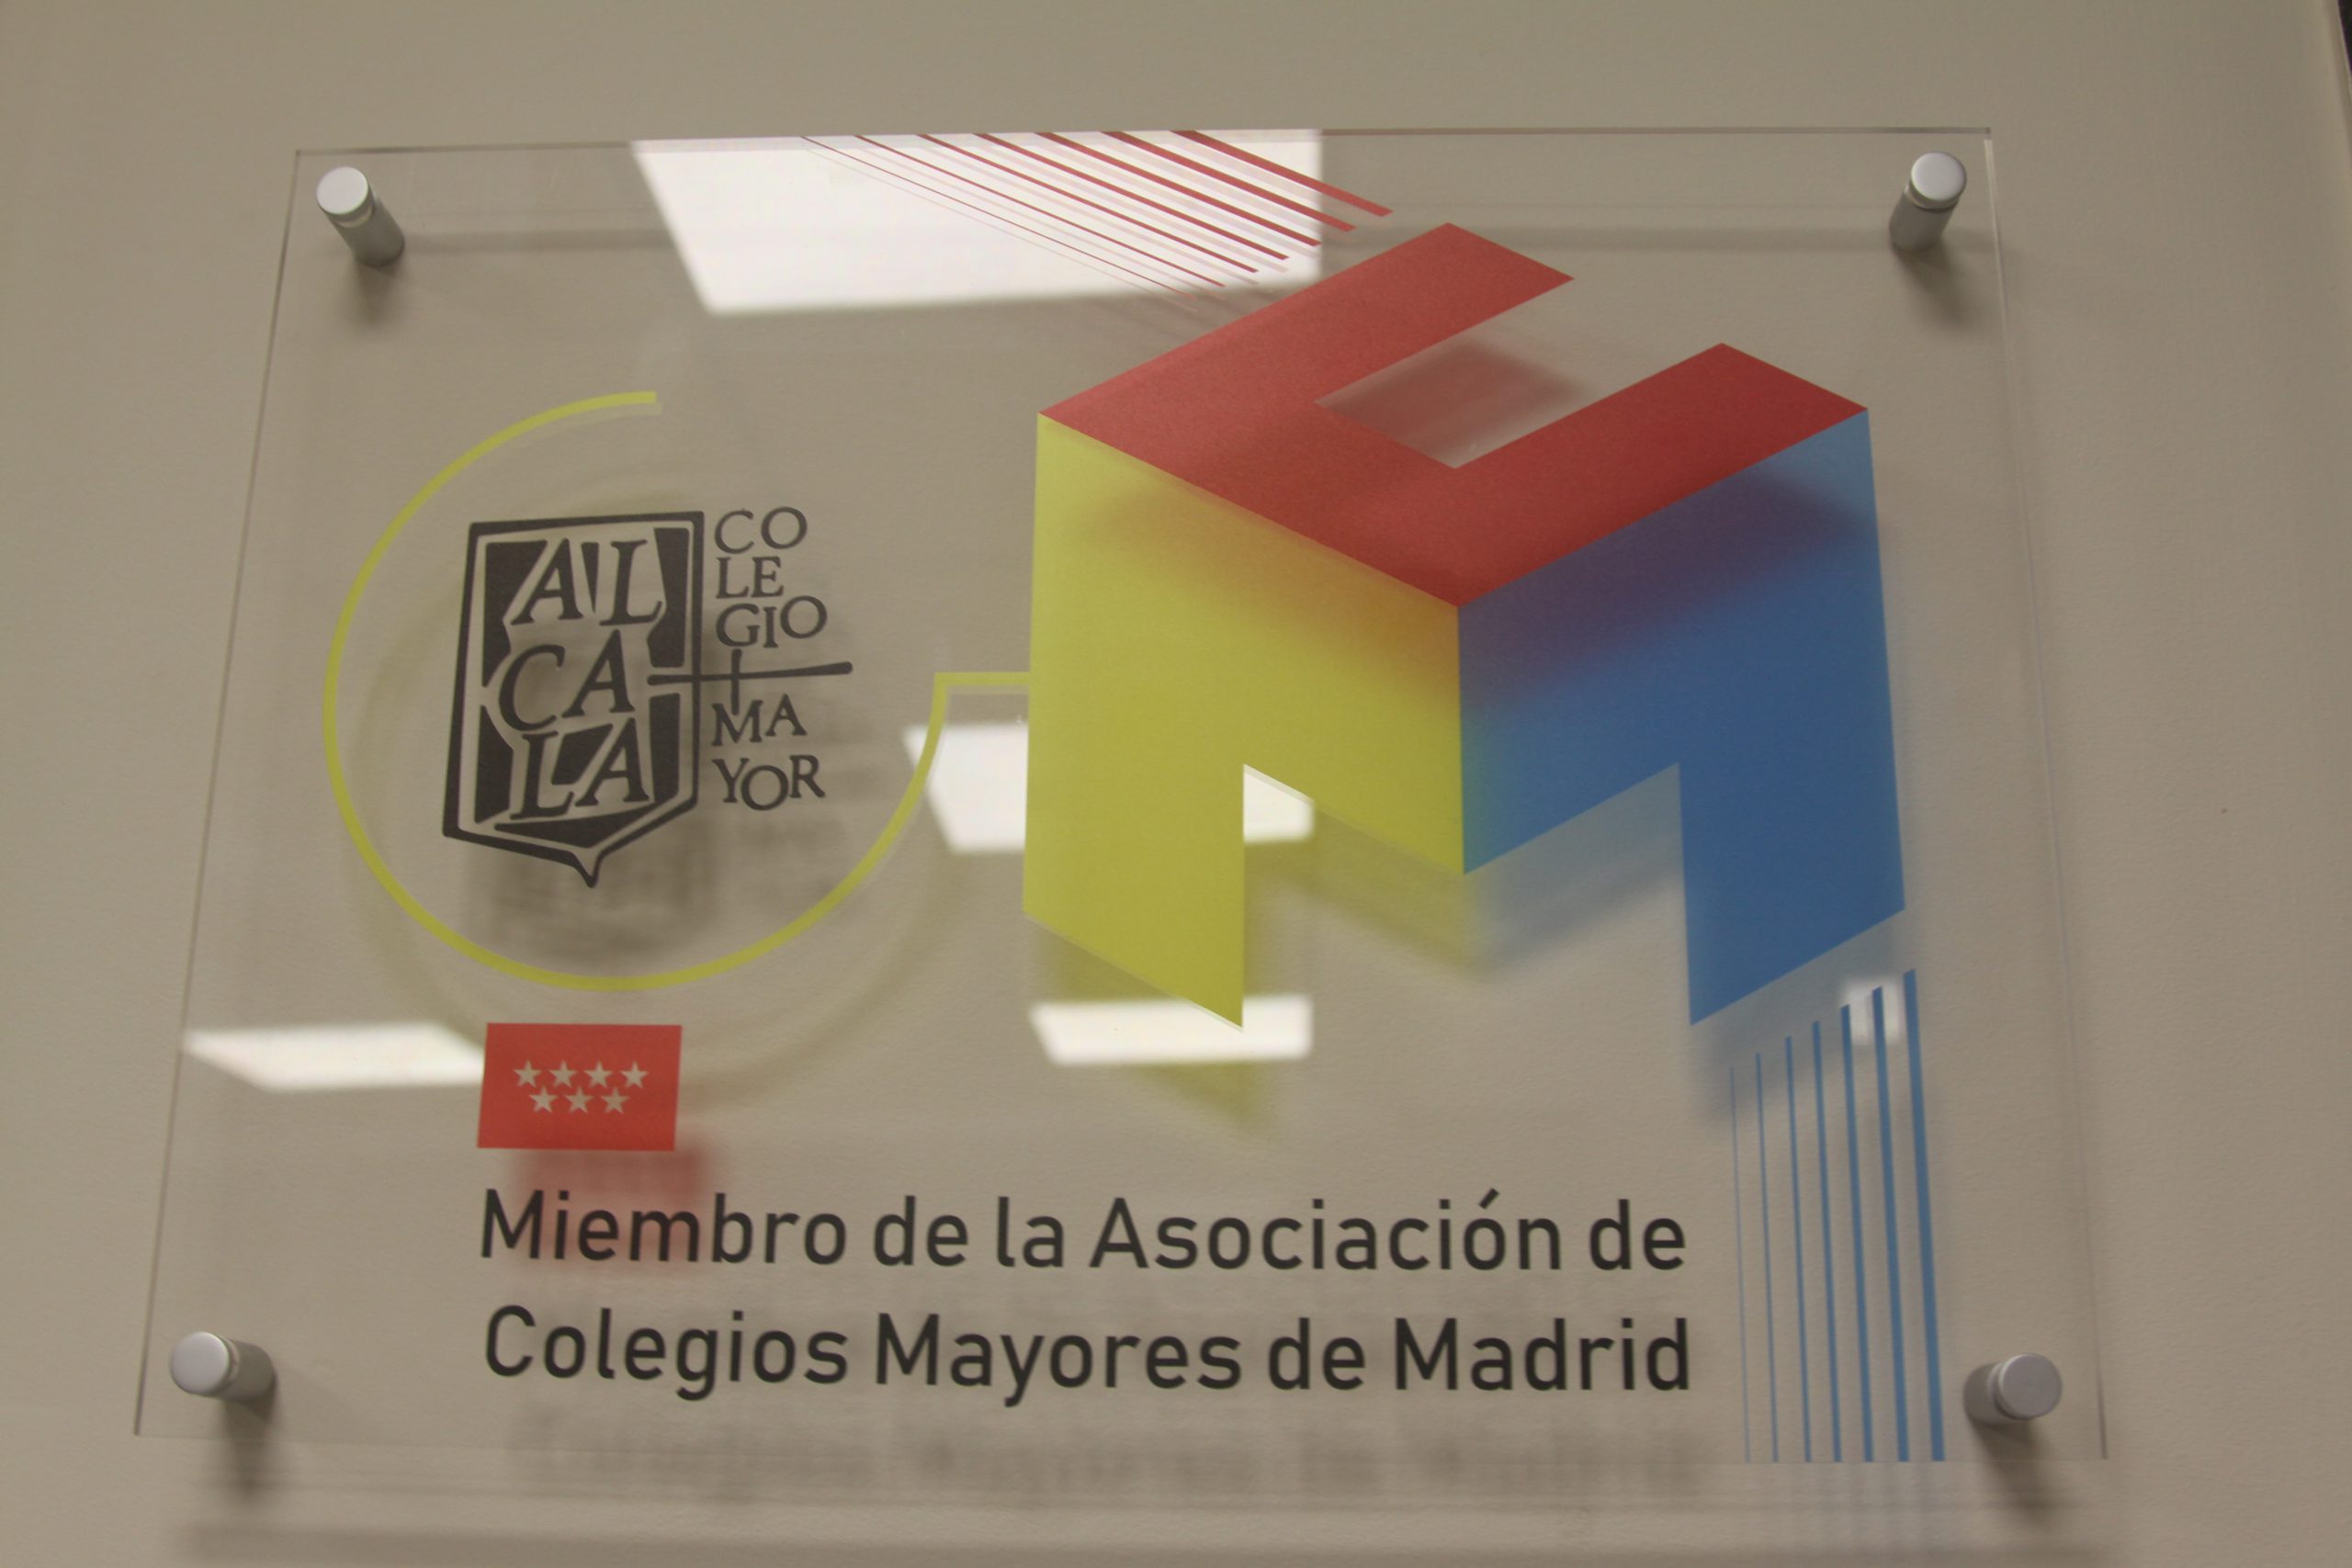 Placa acreditativa de la Asociación de Colegios Mayores de Madrid